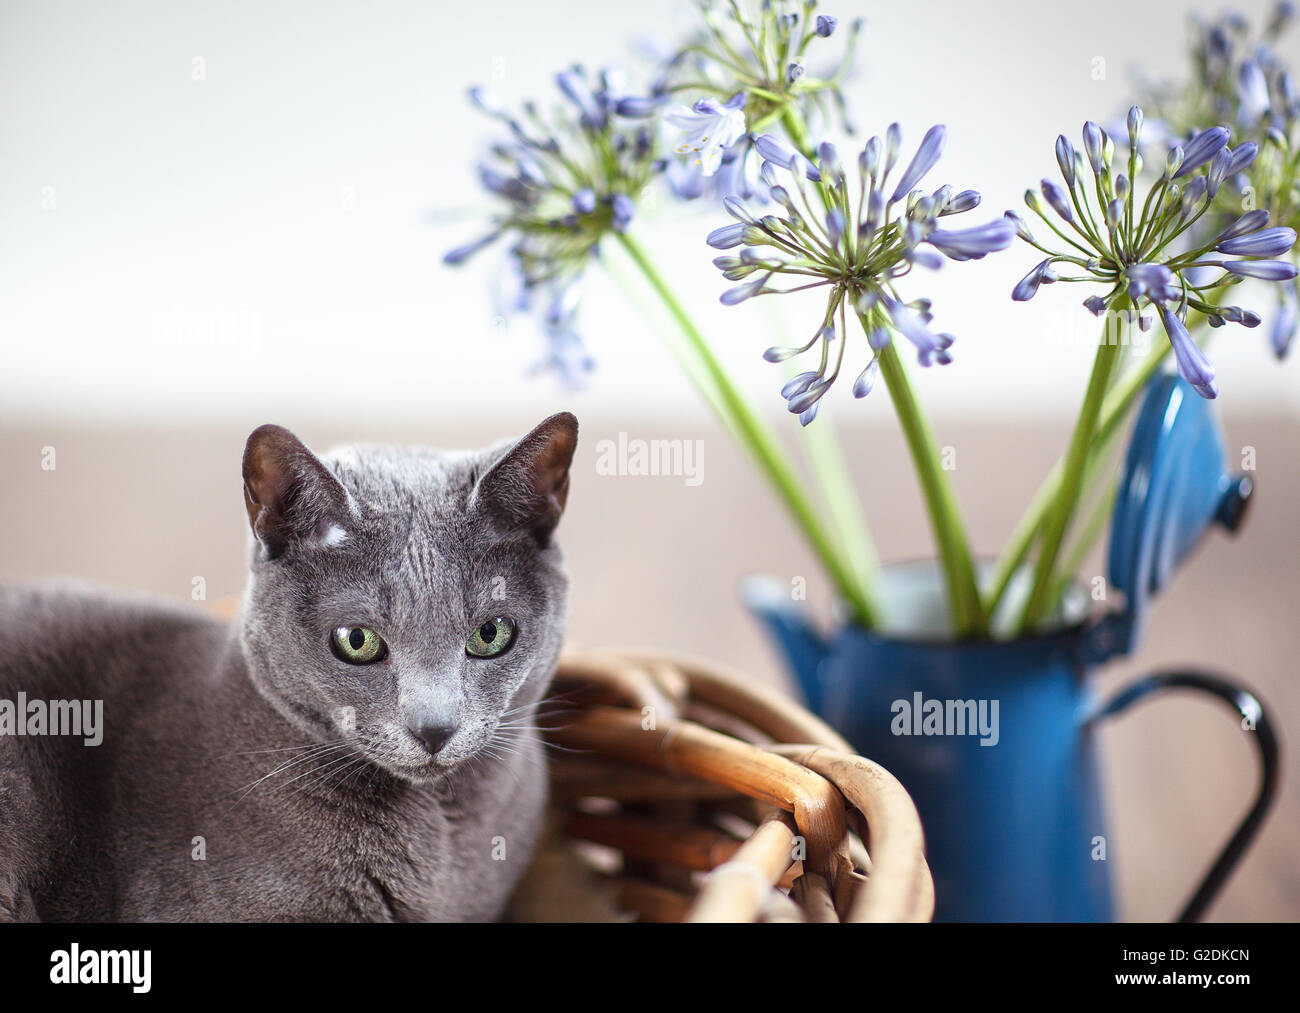 Russisch Blau Rassekatze entspannt in Weidenkorb mit Blumen Stock Photo